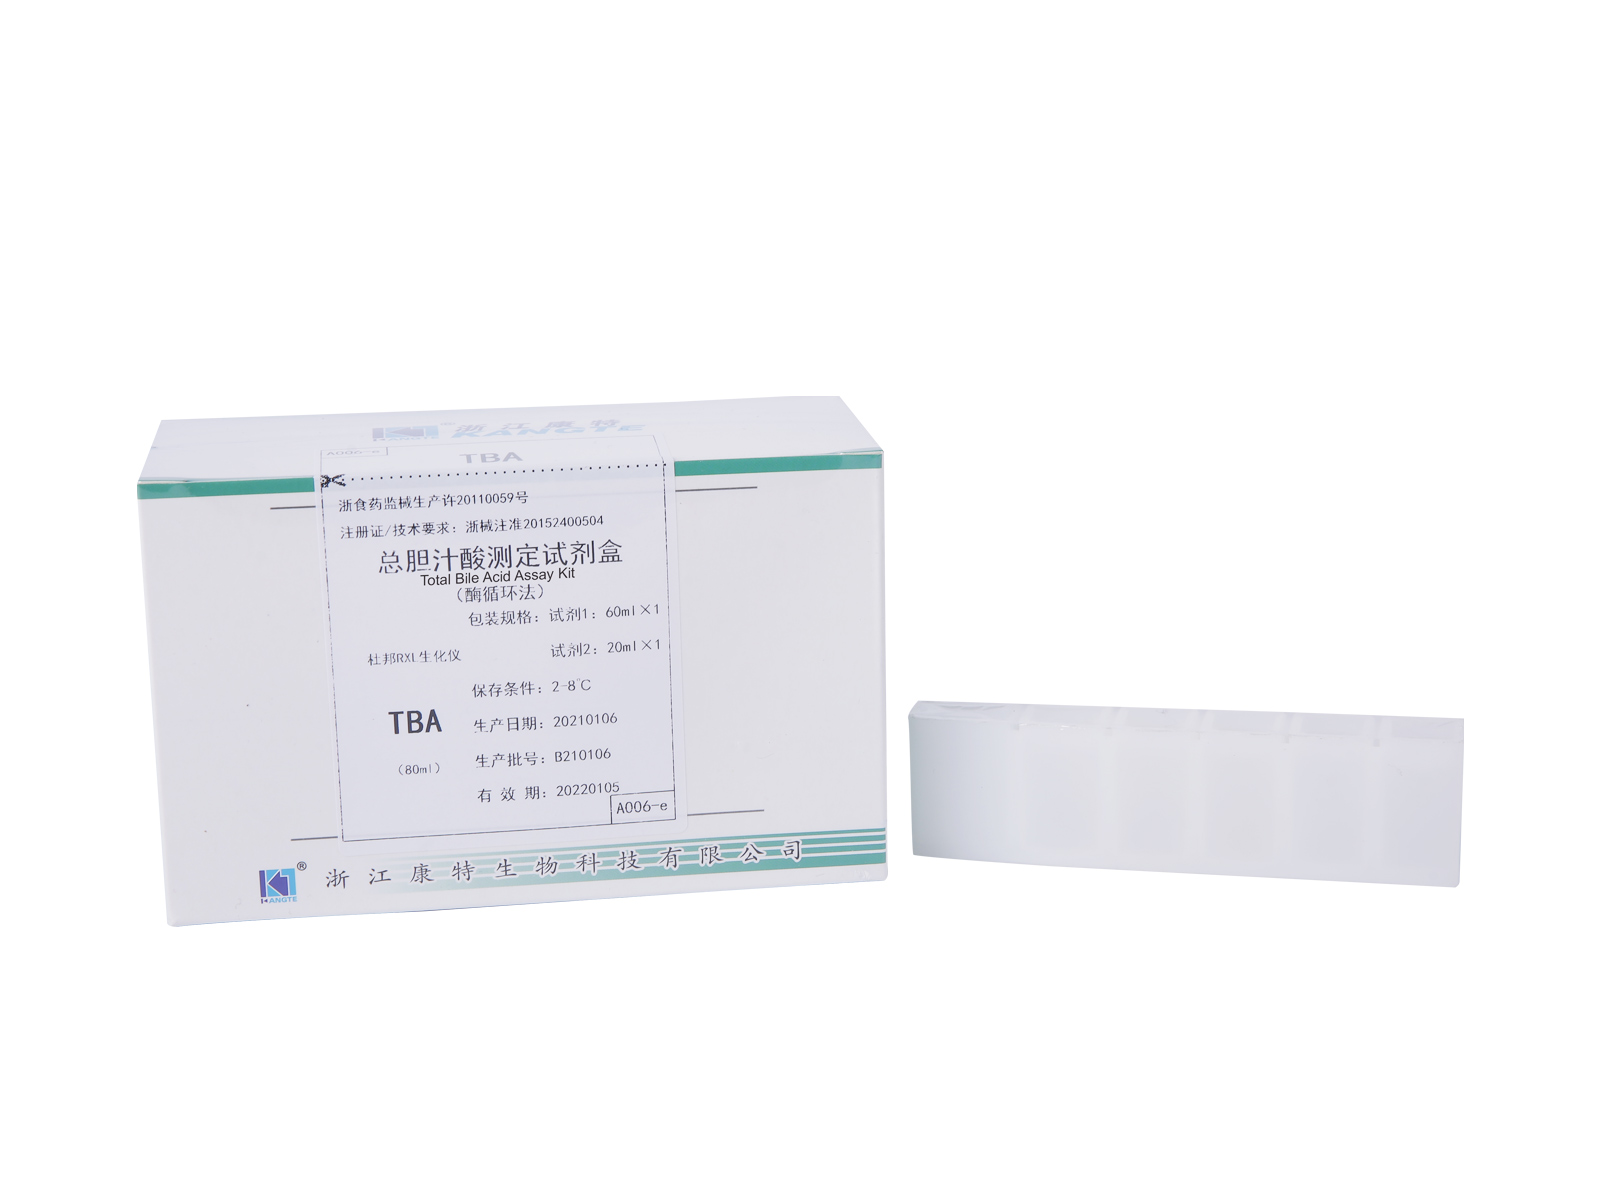 【TBA】 Kit de testare totală a acidului biliar (metoda de ciclizare a enzimelor)